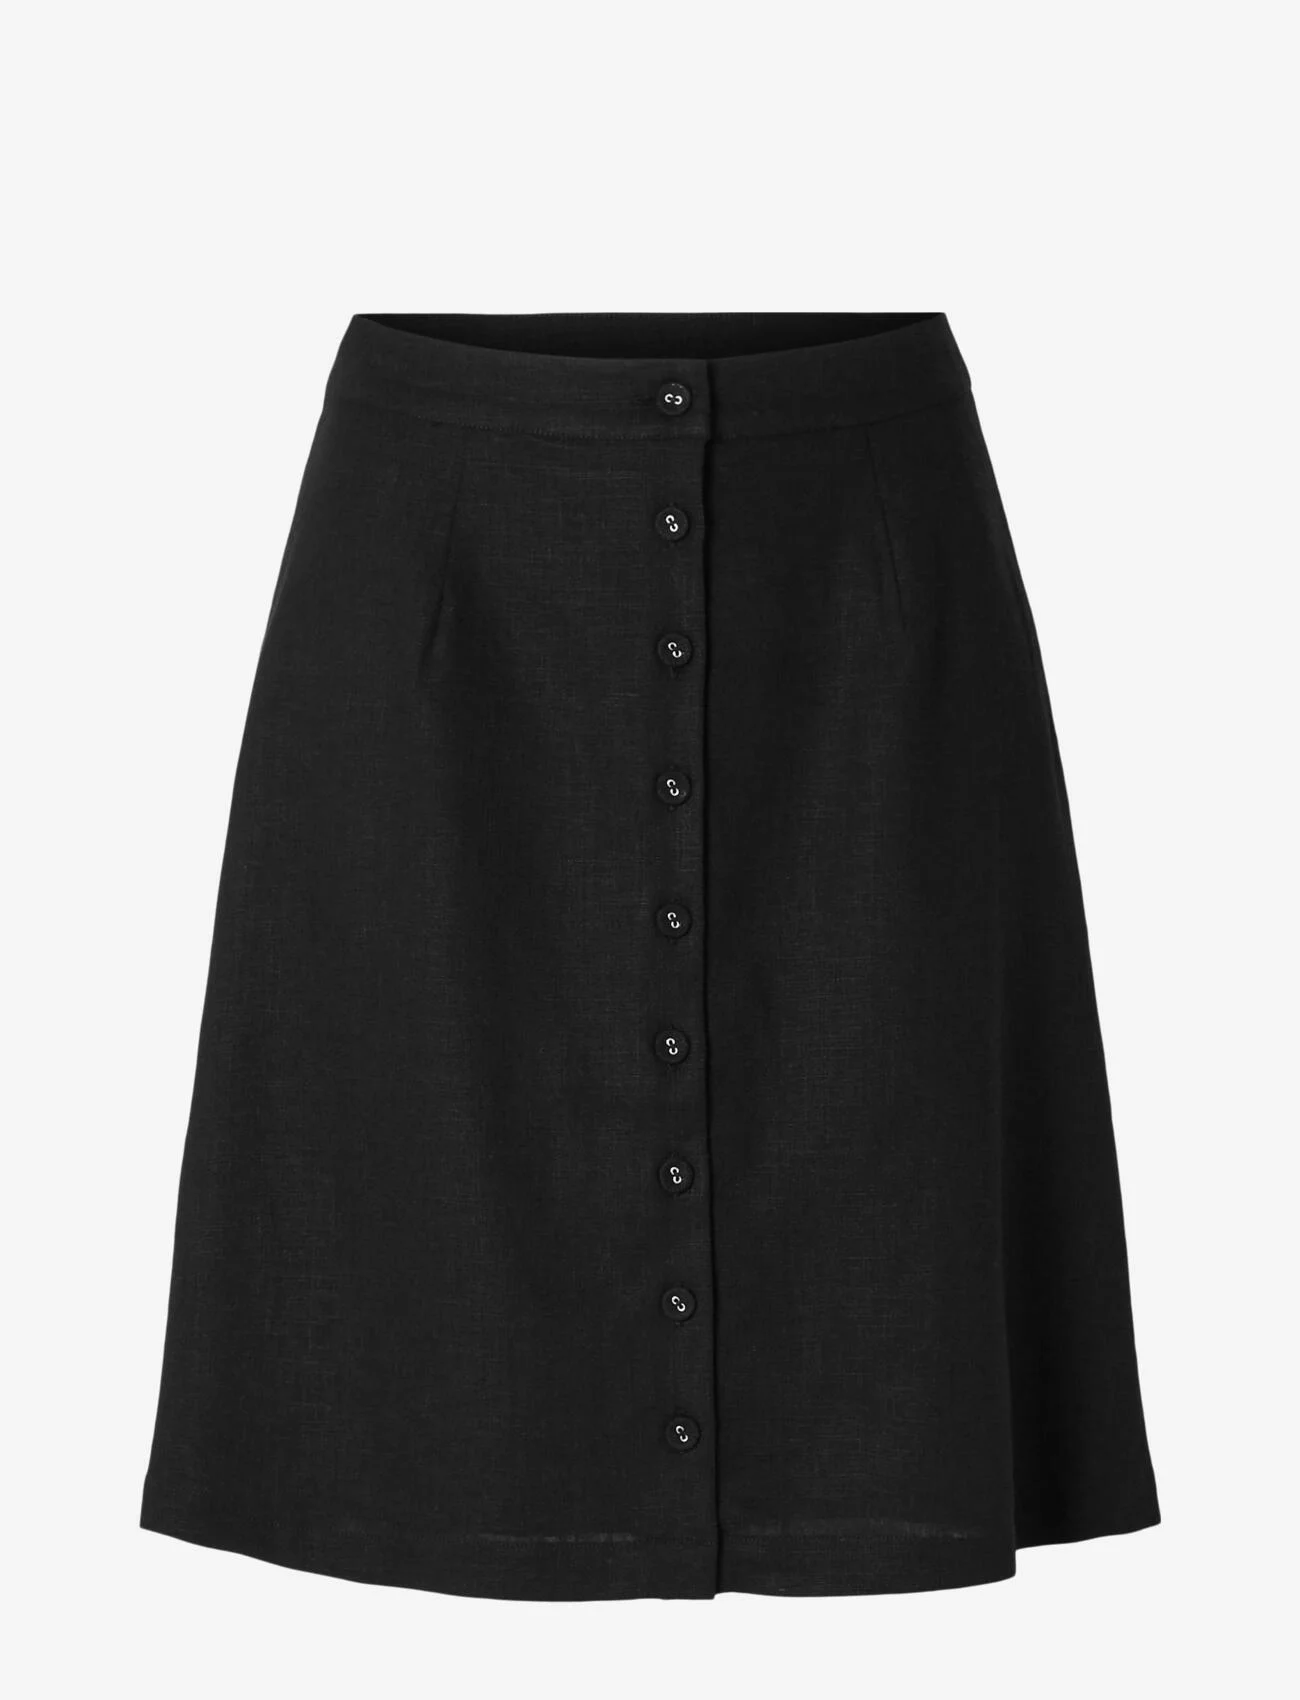 Selected Femme - SLFGULIA HW SHORT SKIRT - korta kjolar - black - 0